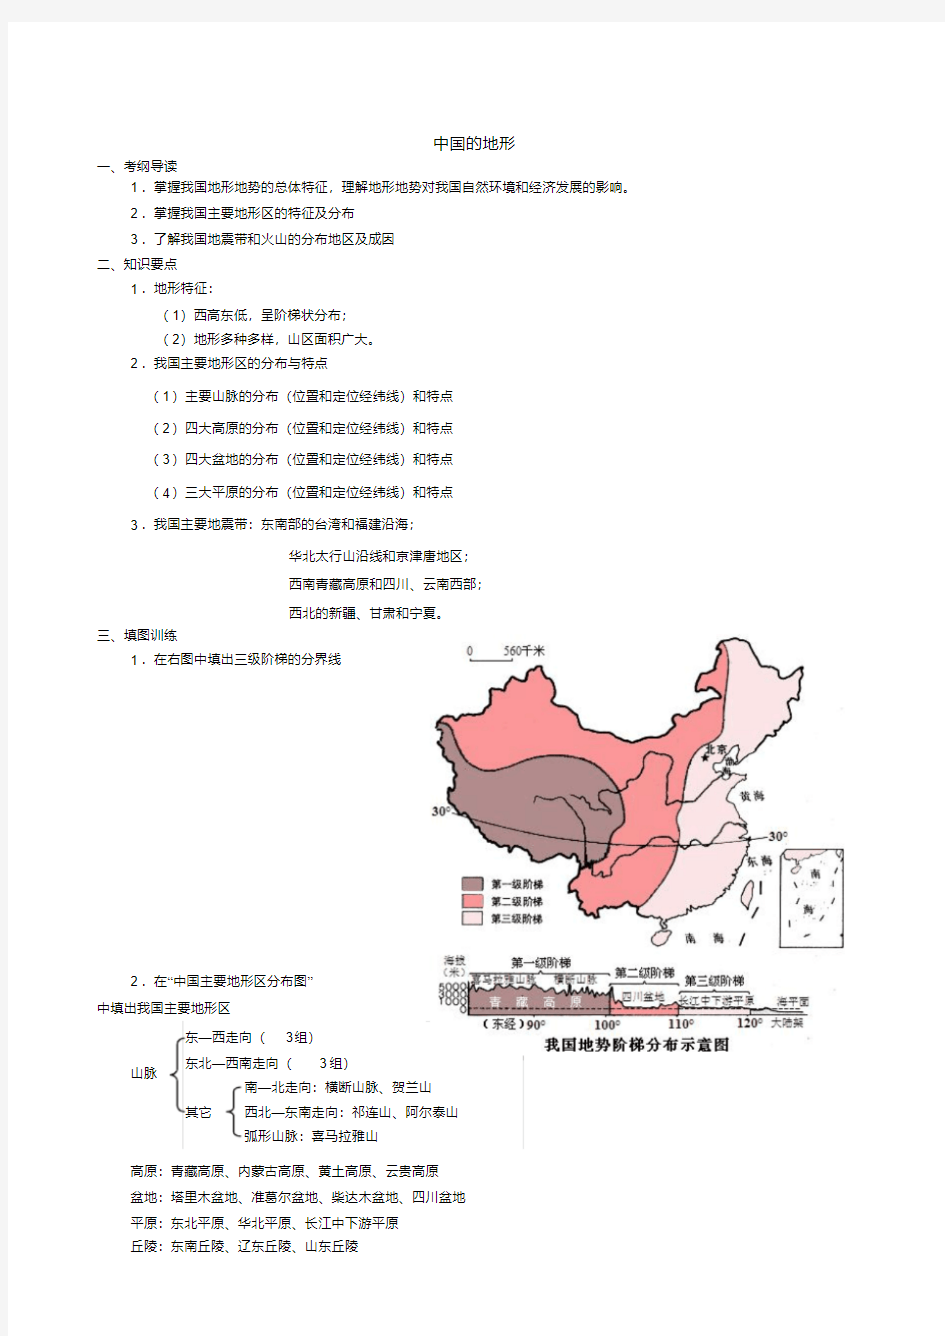 中国地理填图读图训练之二《中国的地形》